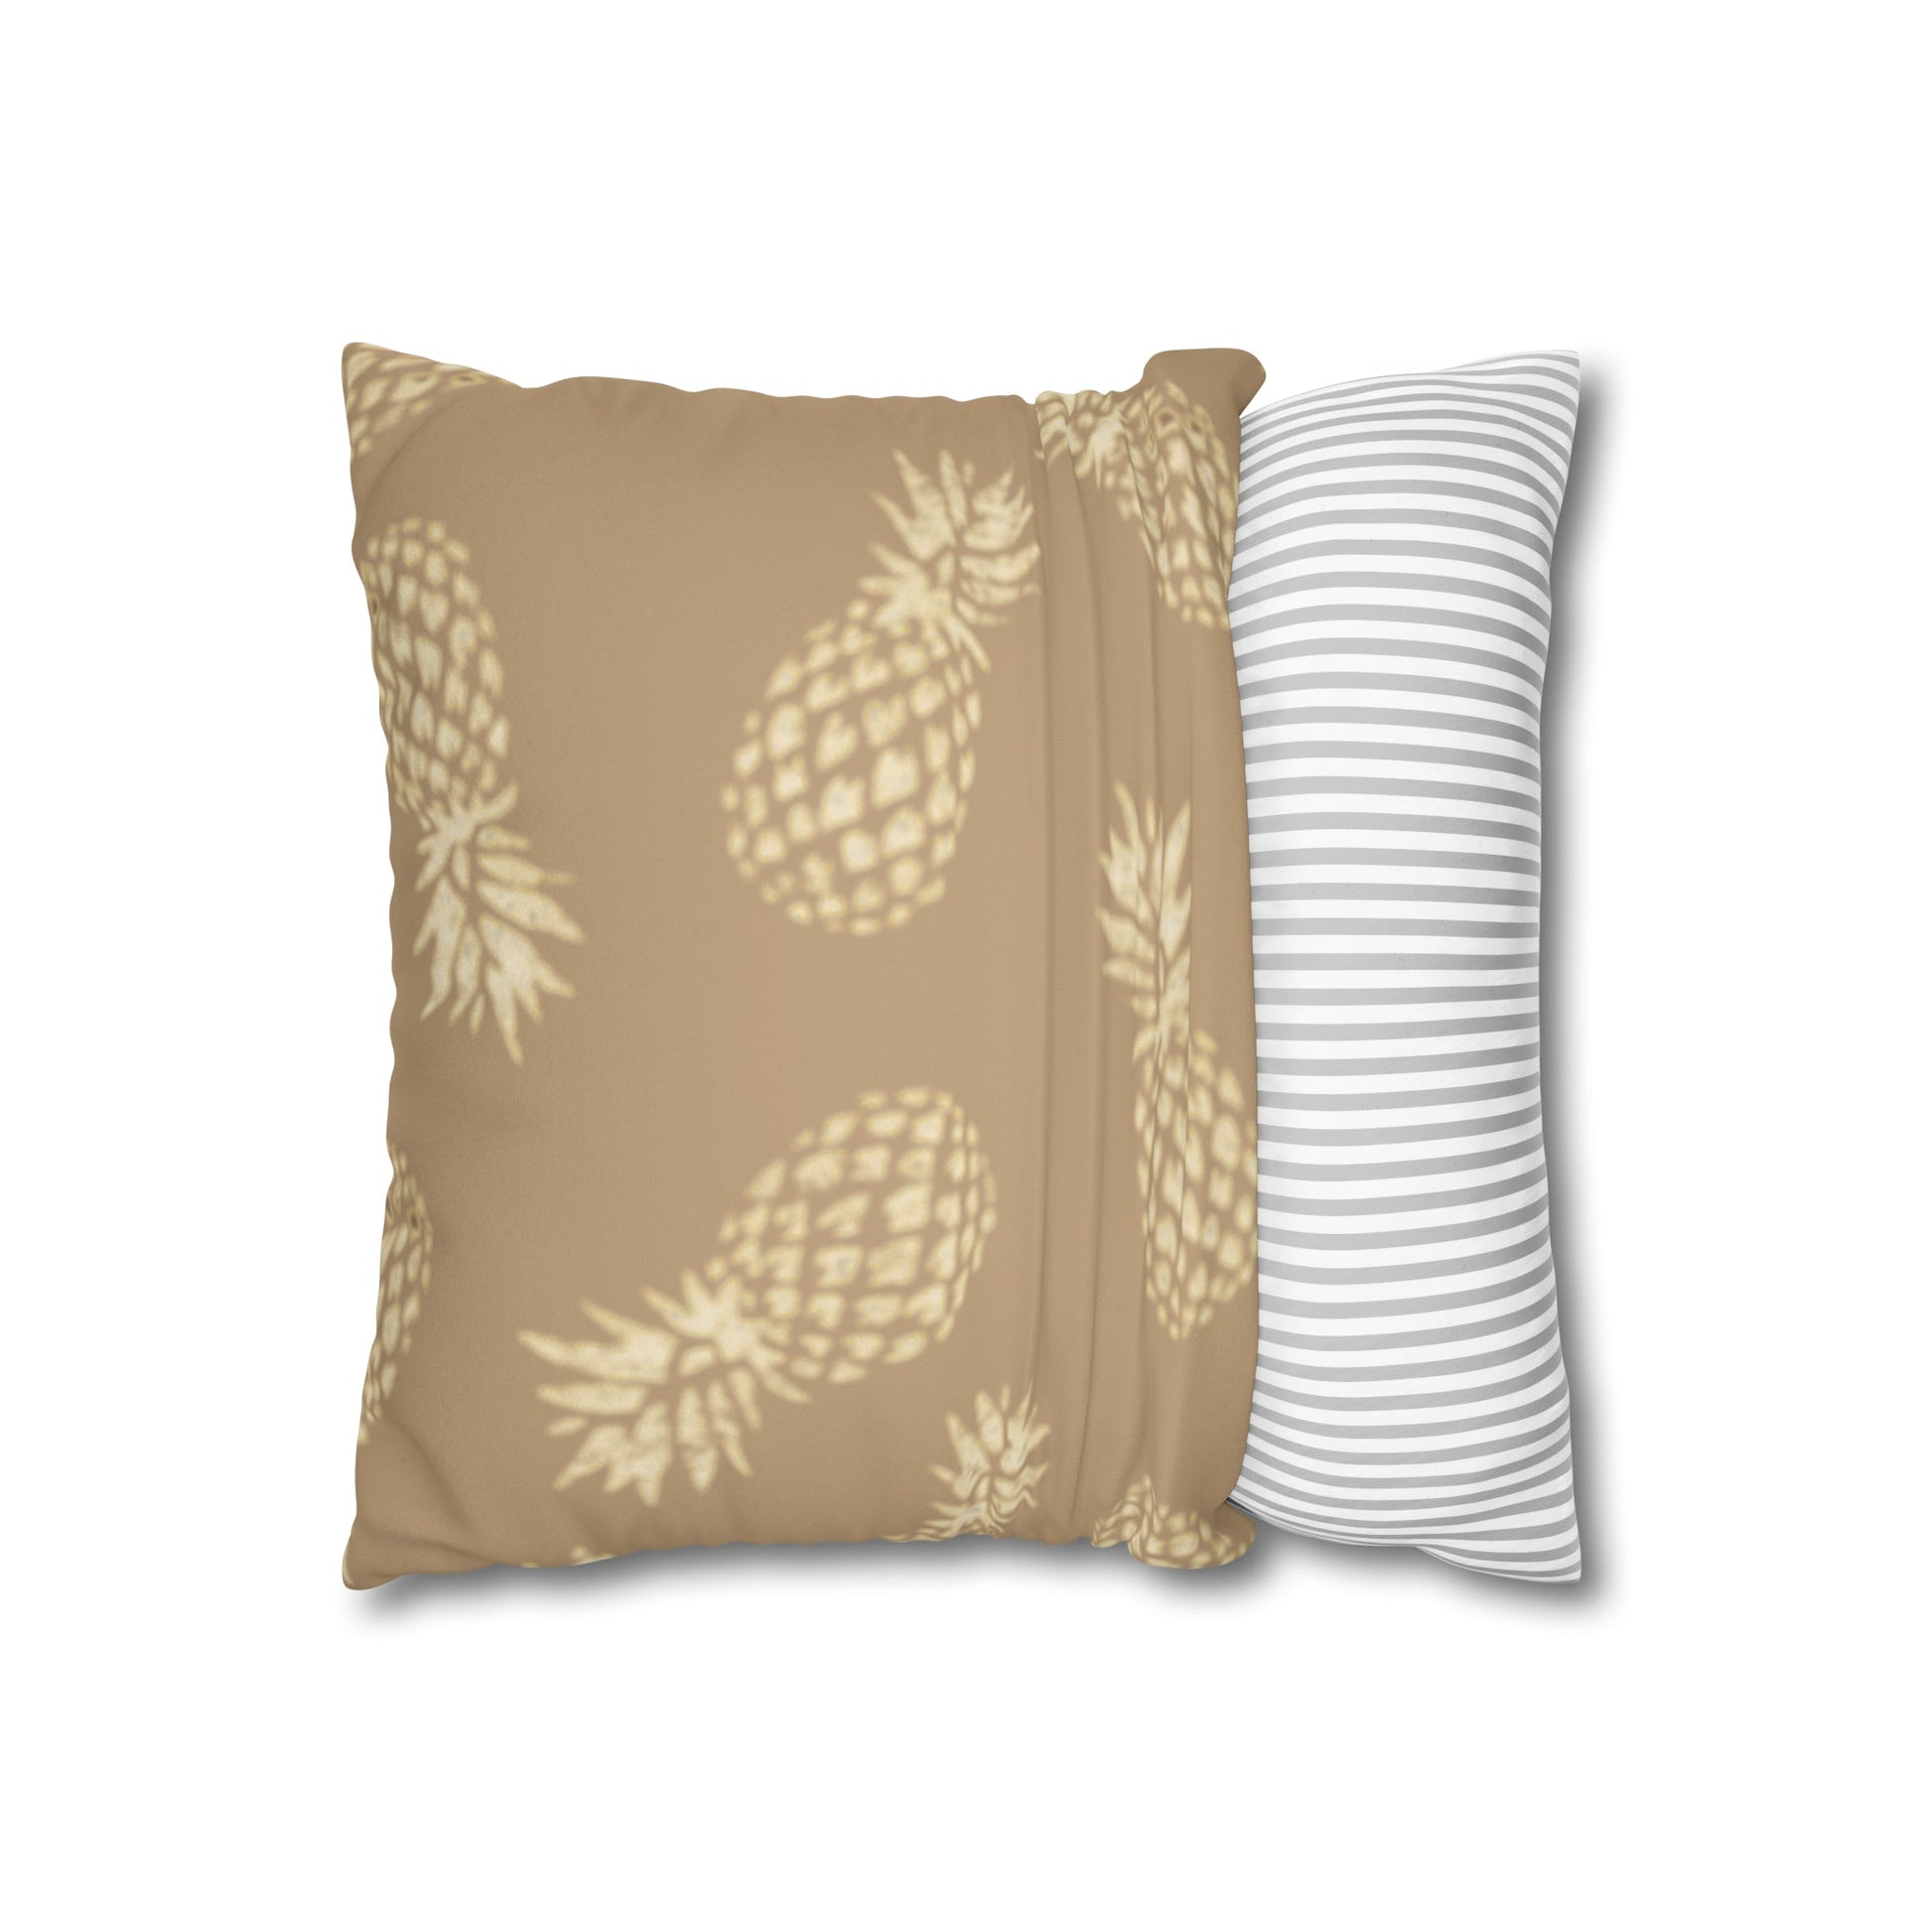 Faux Suede Square Pillow Case Large Pineapple Khaki (4 sizes) - Global Village Kailua Boutique